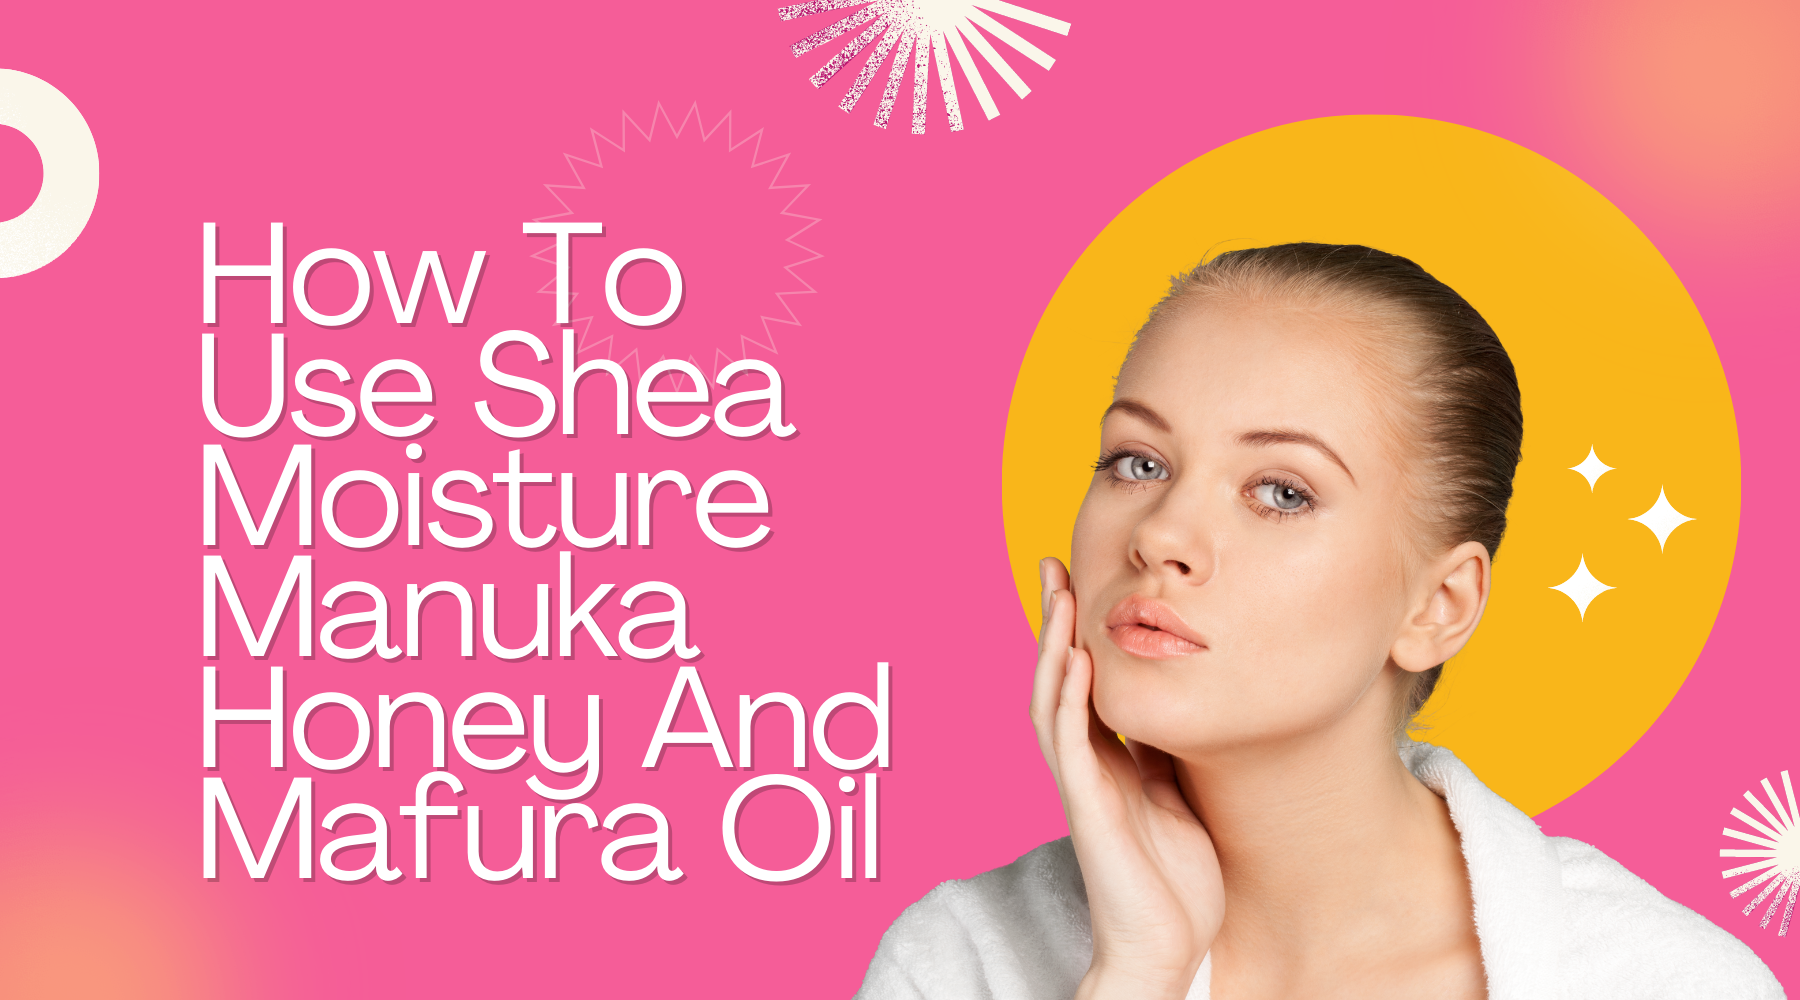 How To Use Shea Moisture Manuka Honey And Mafura Oil